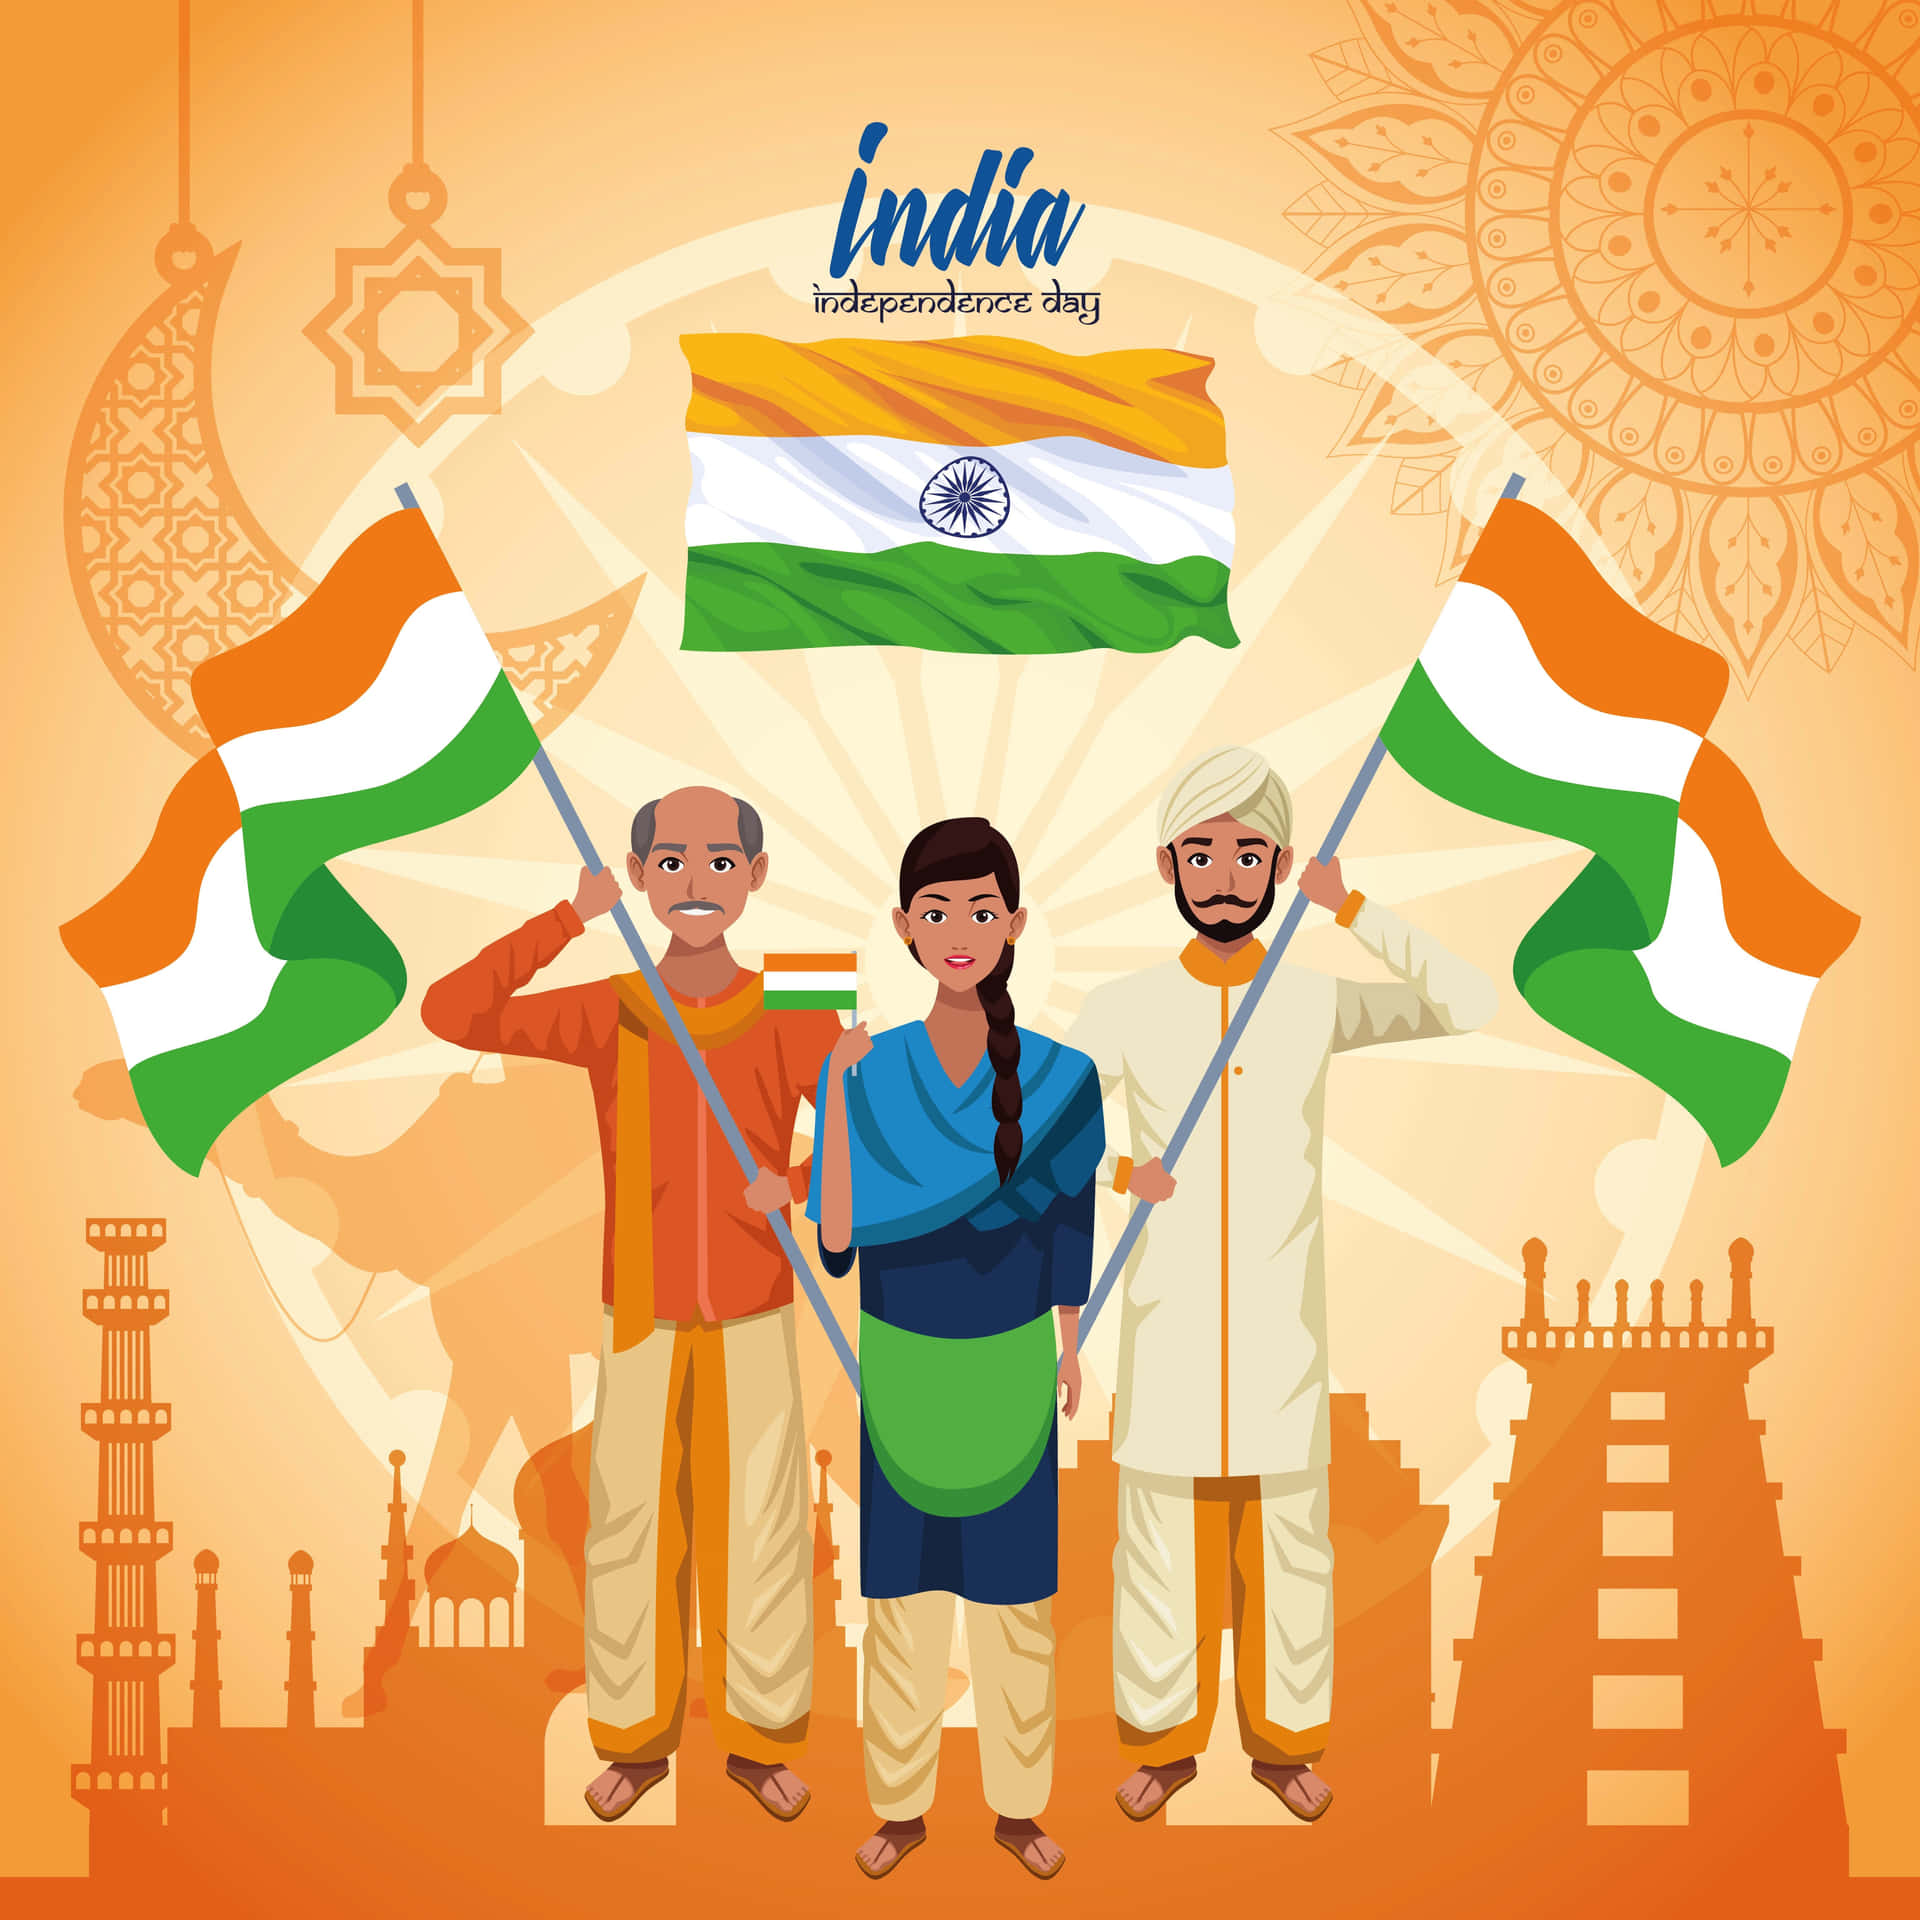 Imagende Personas Dibujadas Ondeando La Bandera De La India En El Día De La Independencia De India.